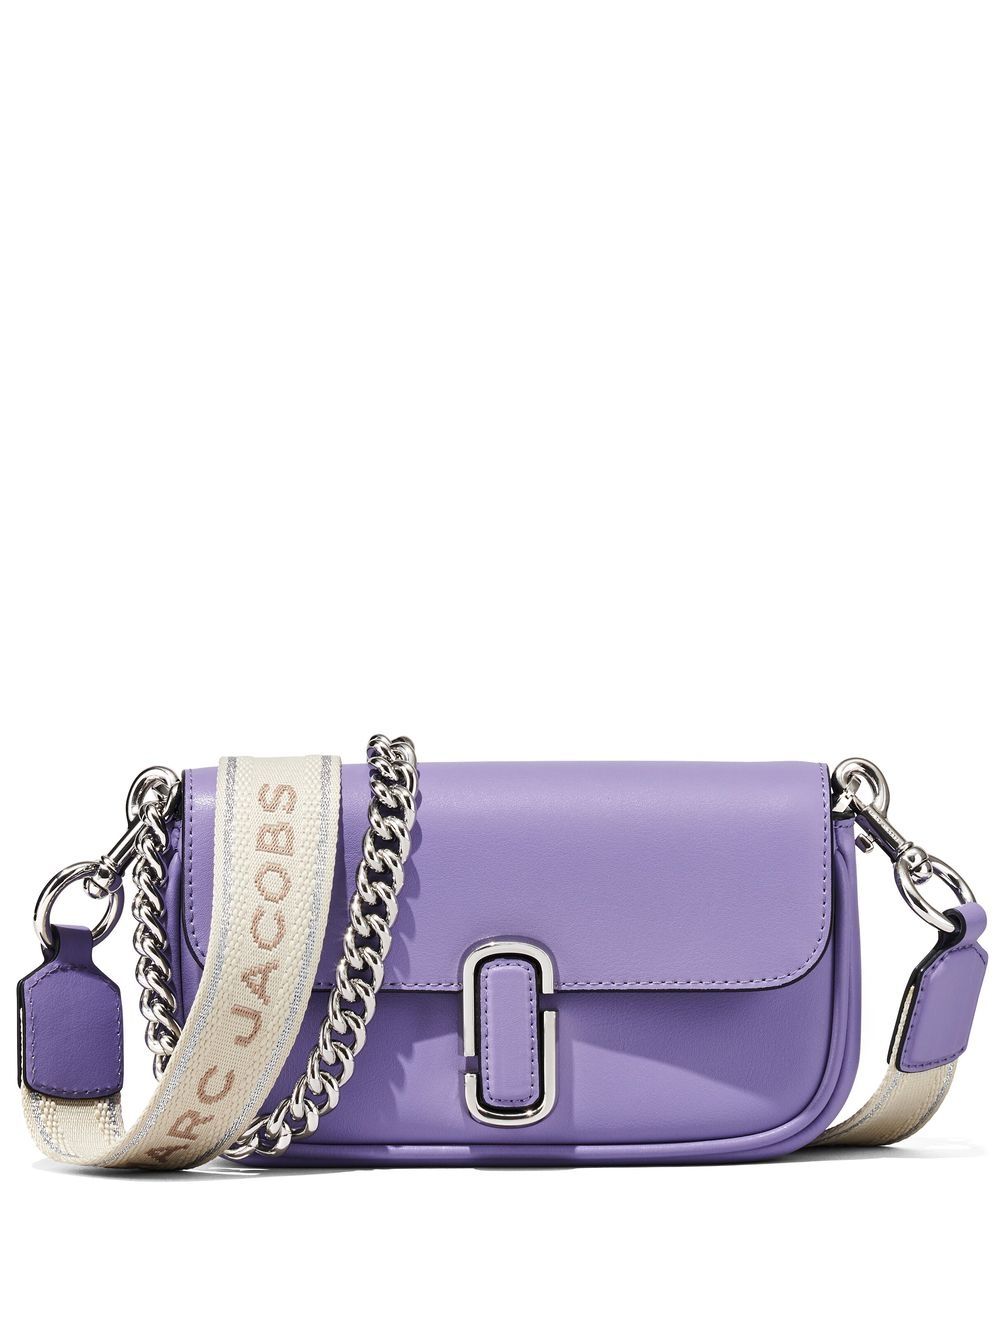 Marc Jacobs The Mini bag - Purple von Marc Jacobs